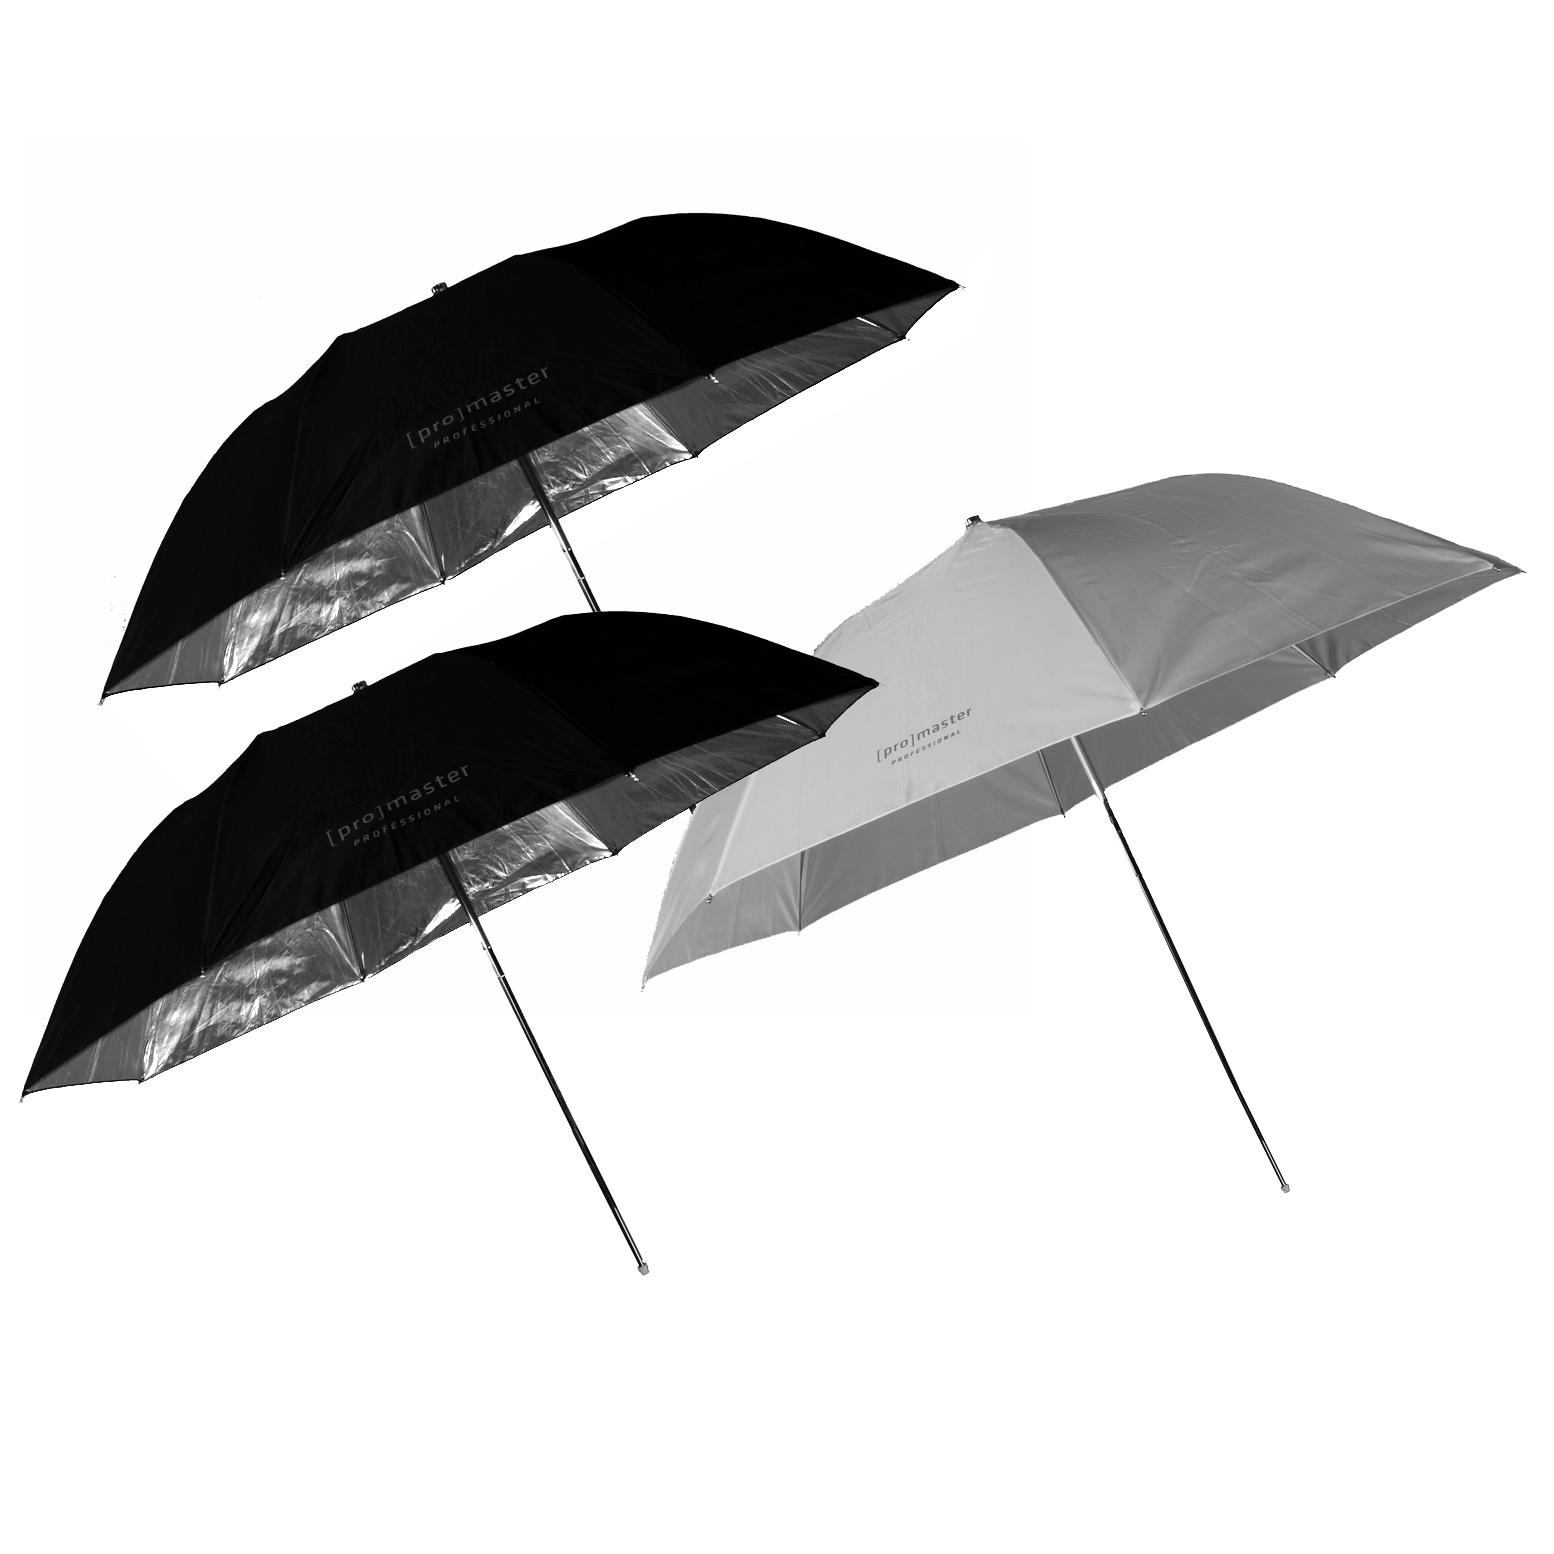 Promaster 6777 Umbrella Set (2 36" Black  / Silver Umbrella and 1 36" Soft Light Umbrella)